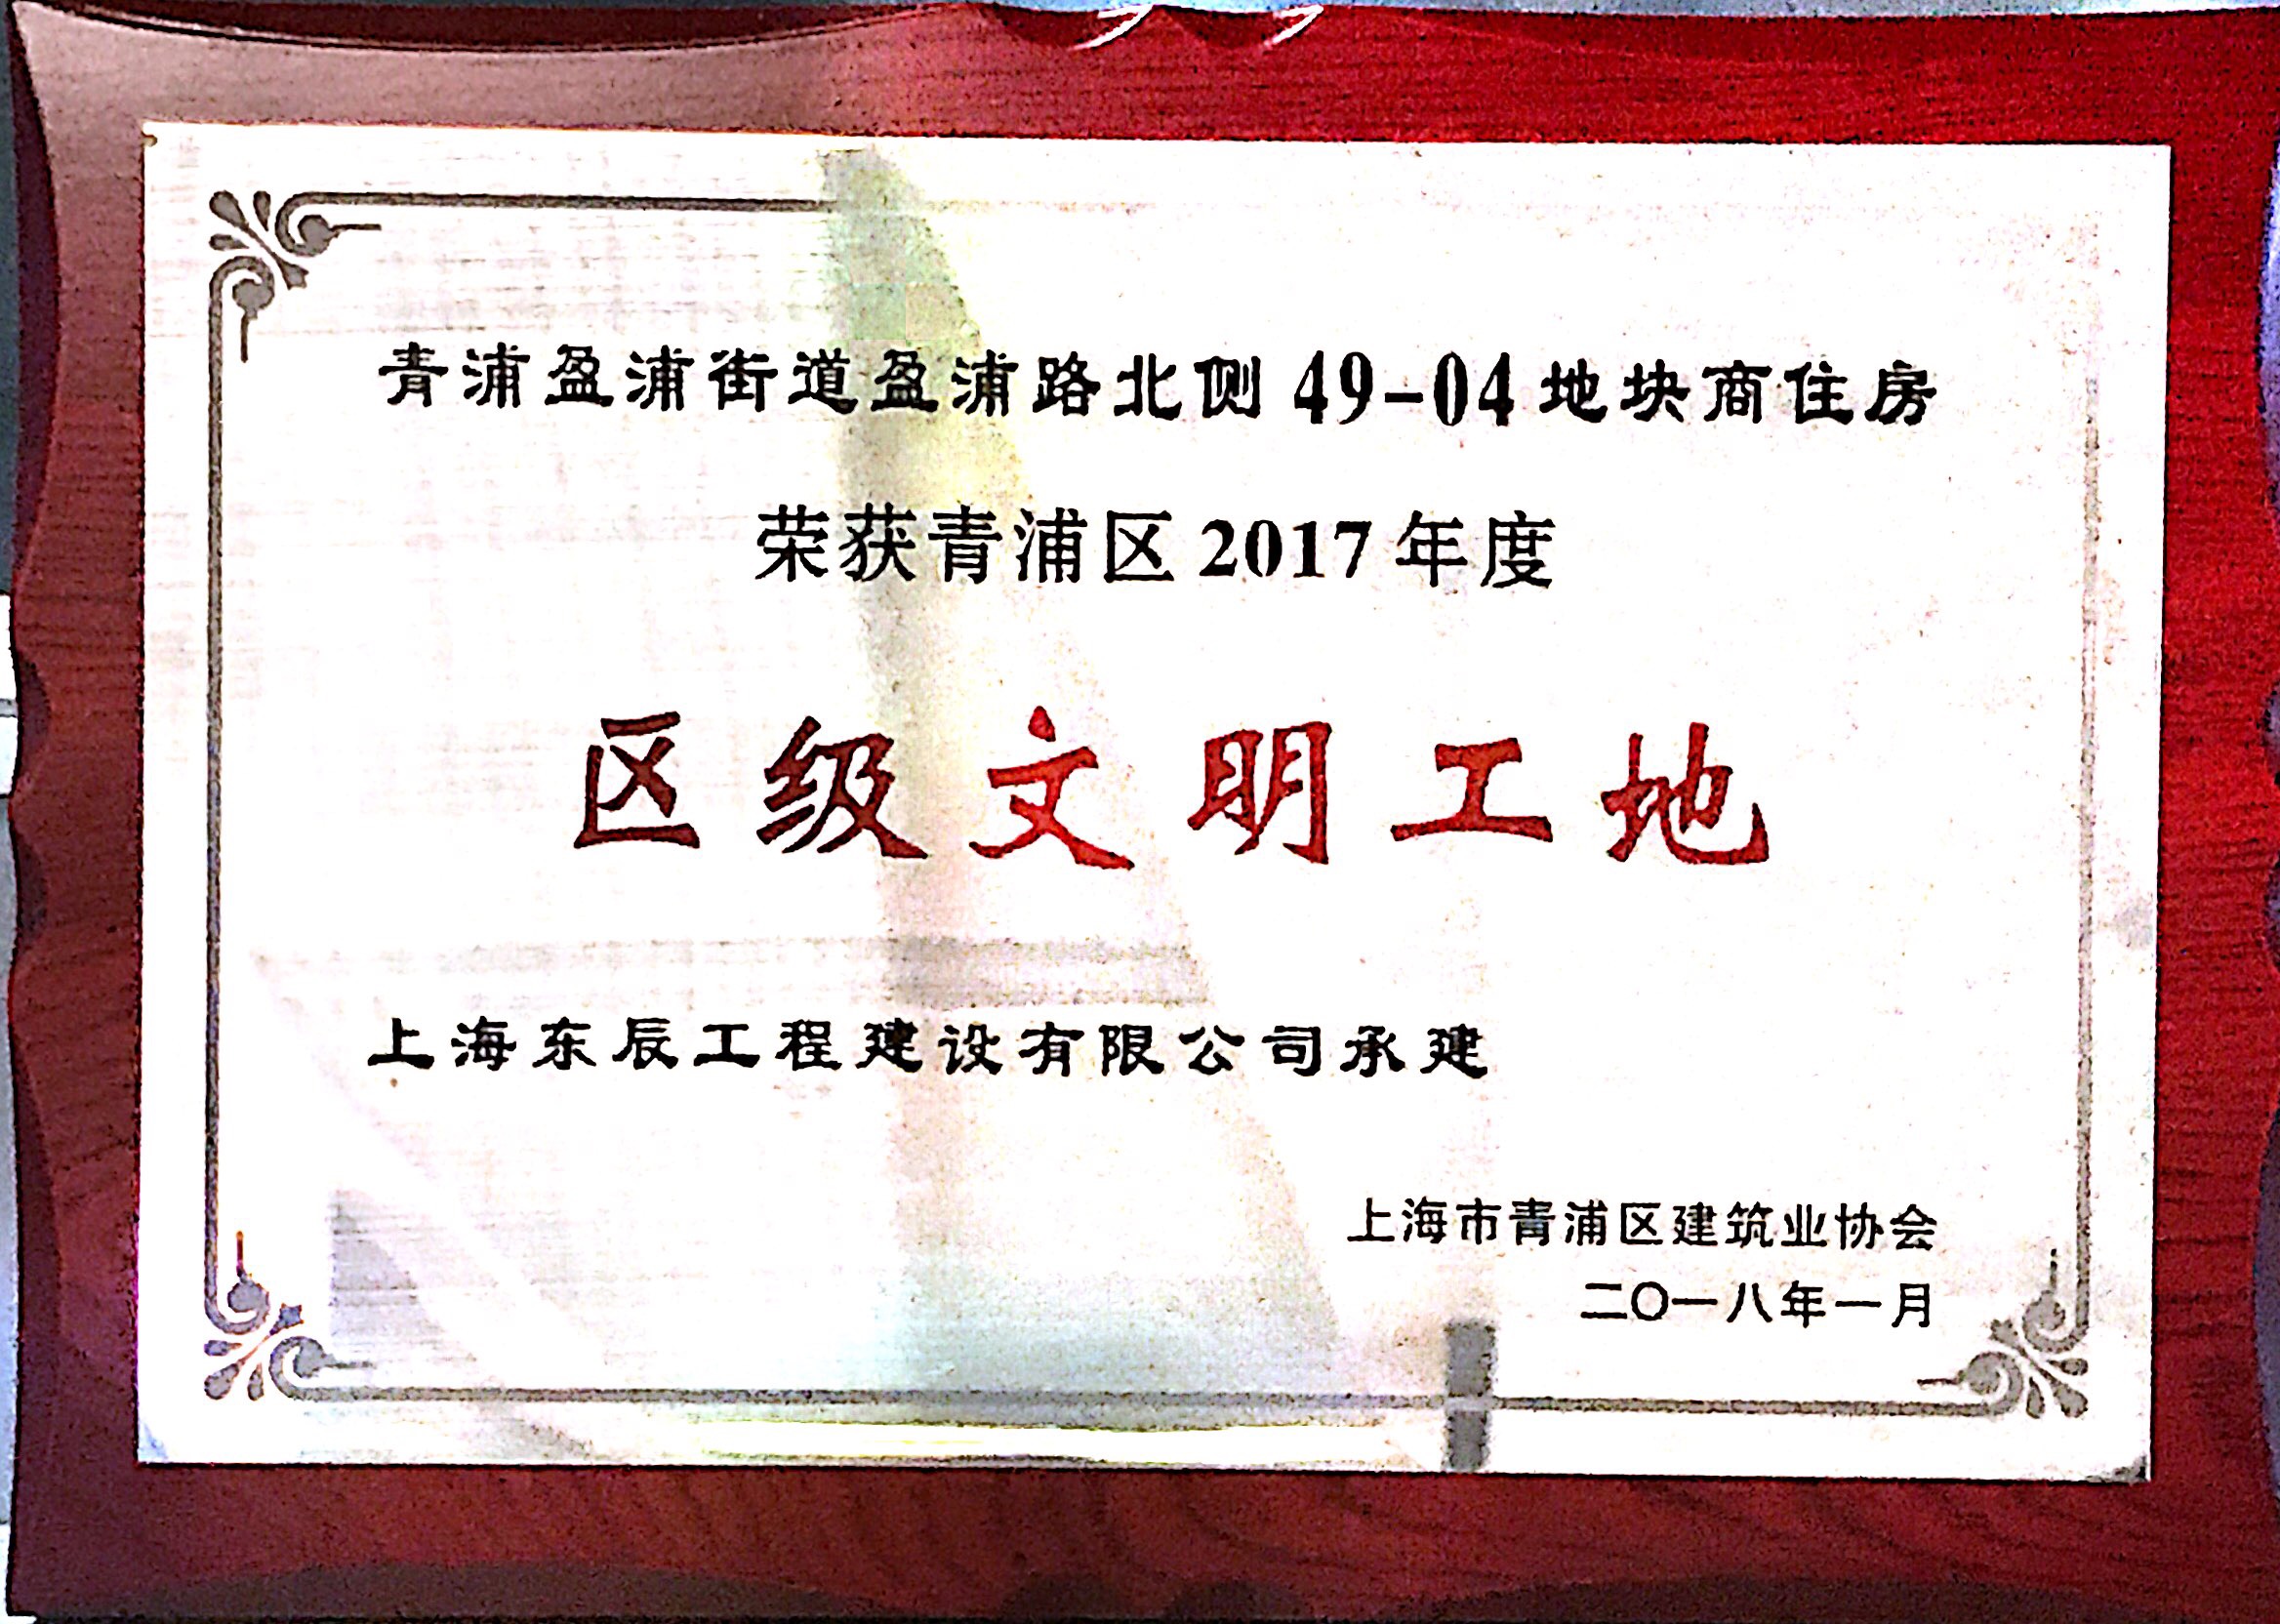 上海市青浦区2017年度“区级文明工地”